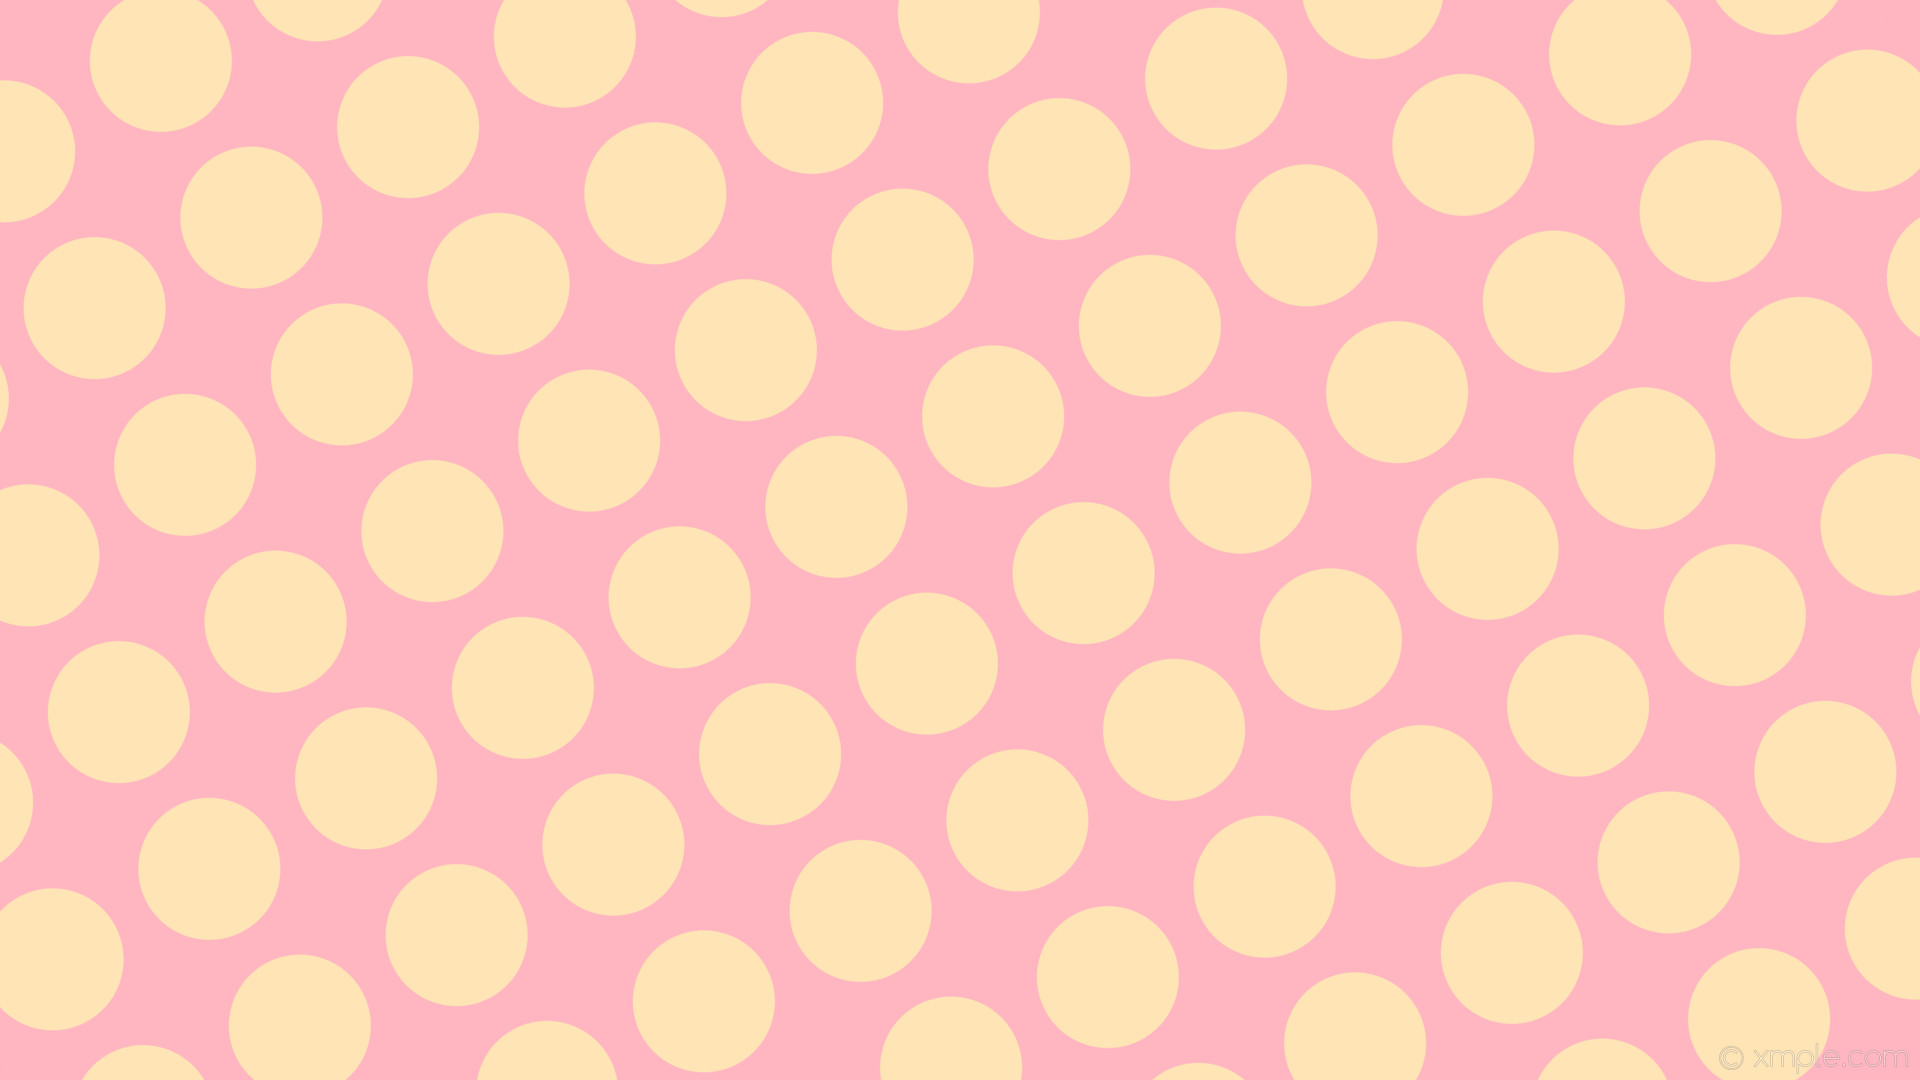 1920x1080 wallpaper yellow polka dots spots pink light pink moccasin #ffb6c1 #ffe4b5  30Â° 142px